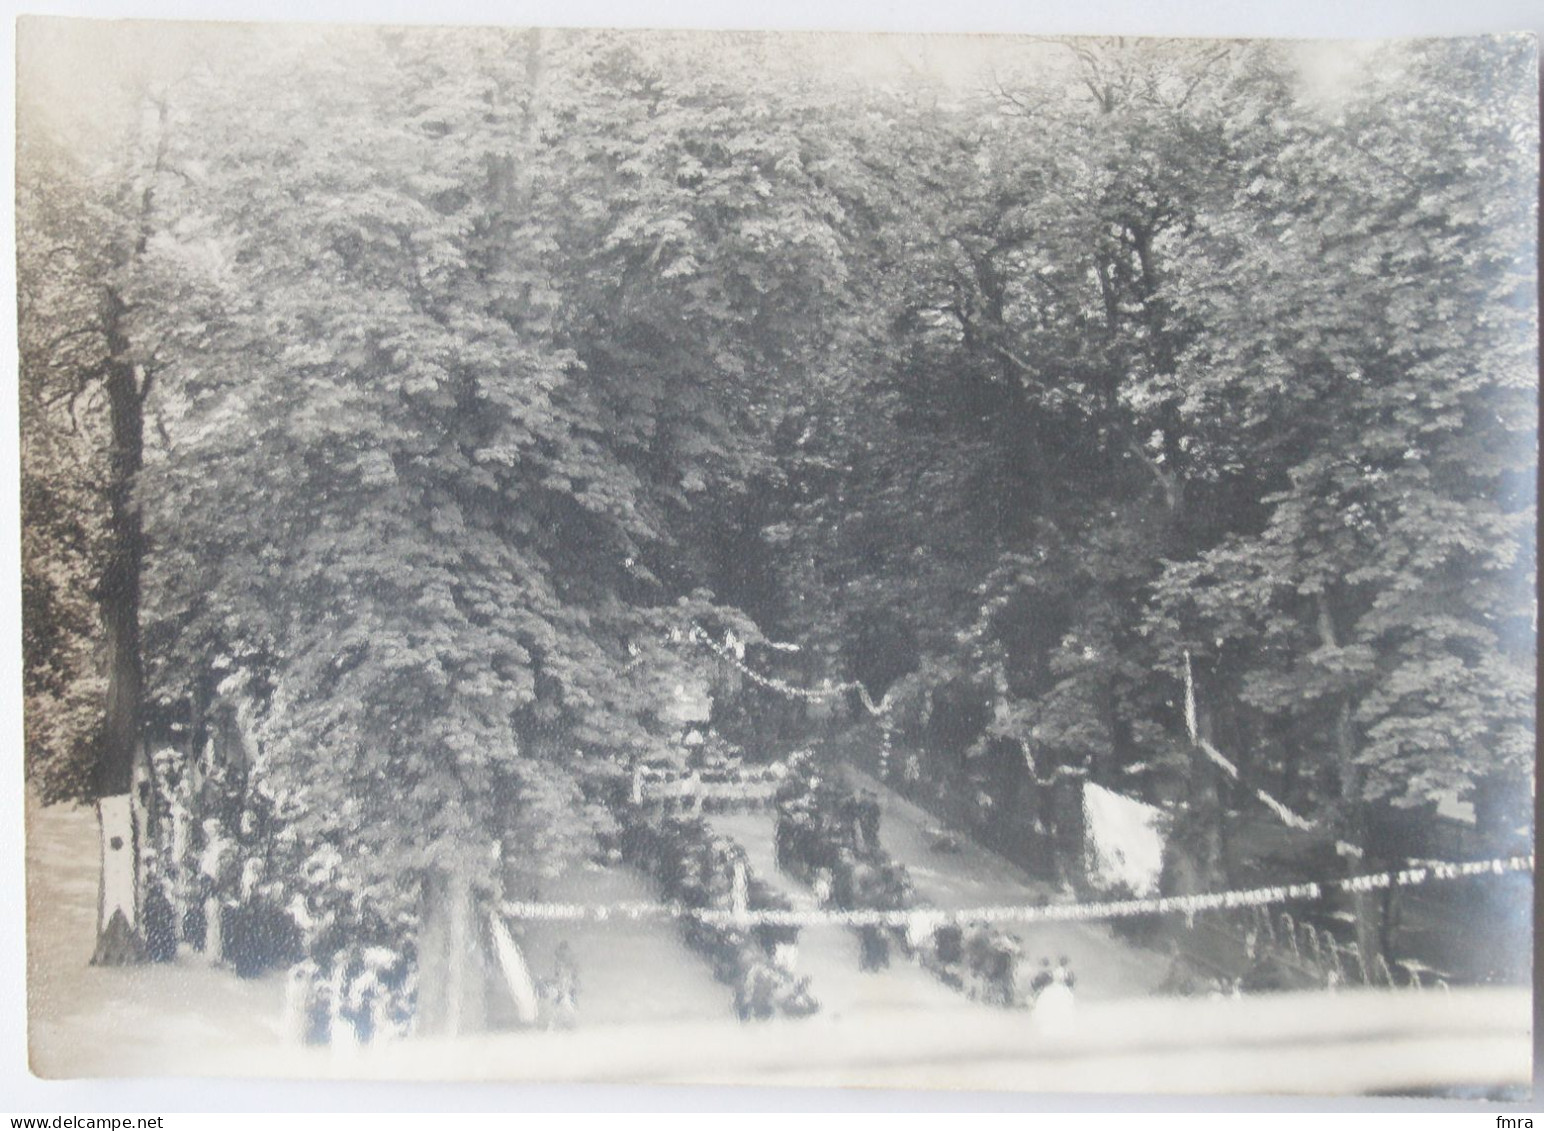 39 – DOLE Collège ND Mont Roland– Fête Du Sacré-Coeur De Jésus 27 Juin 1924 –Photo Ancienne 11,8x16,8cm Jura Non CP/GP31 - Dole